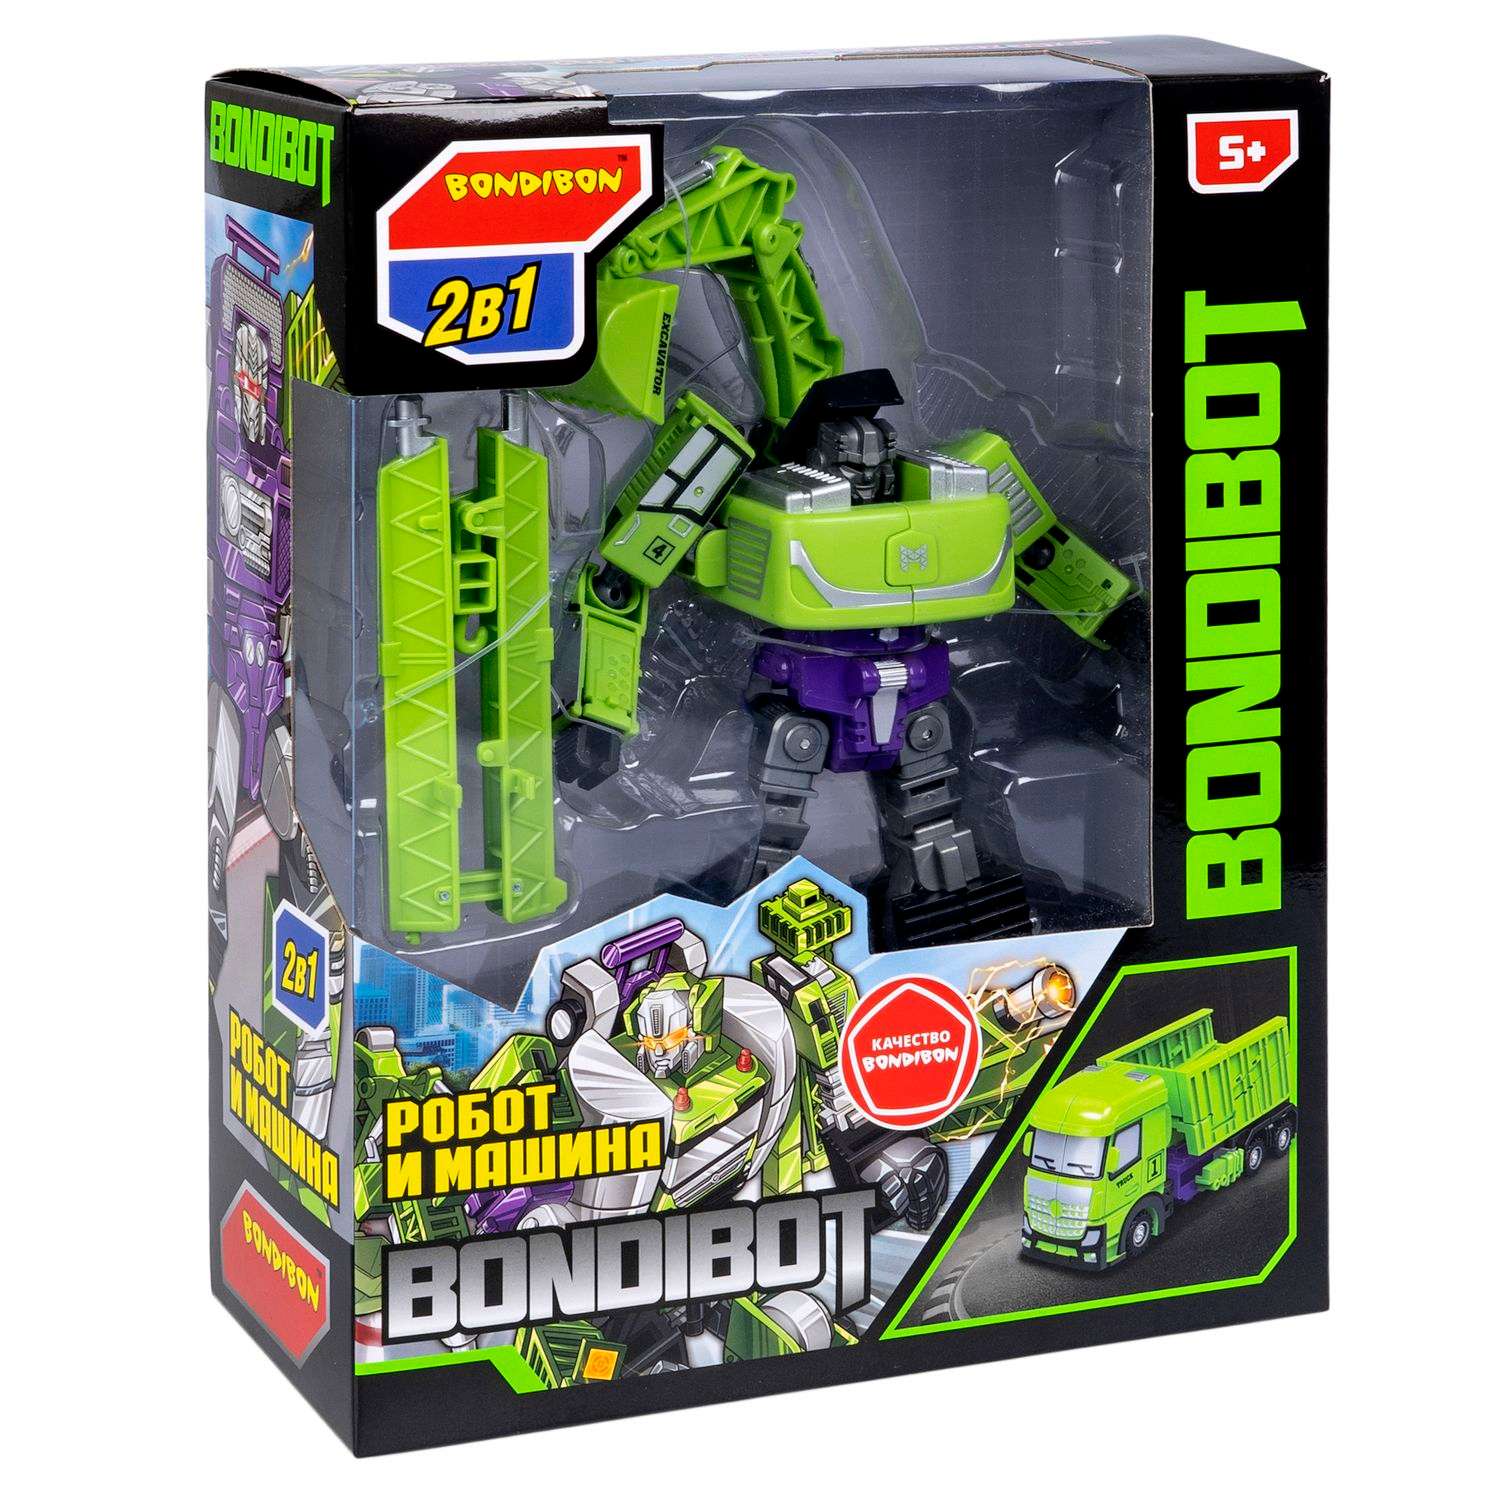 Трансформер BONDIBON BONDIBOT 2в1 робот- гусеничный экскаватор зелёного цвета - фото 3